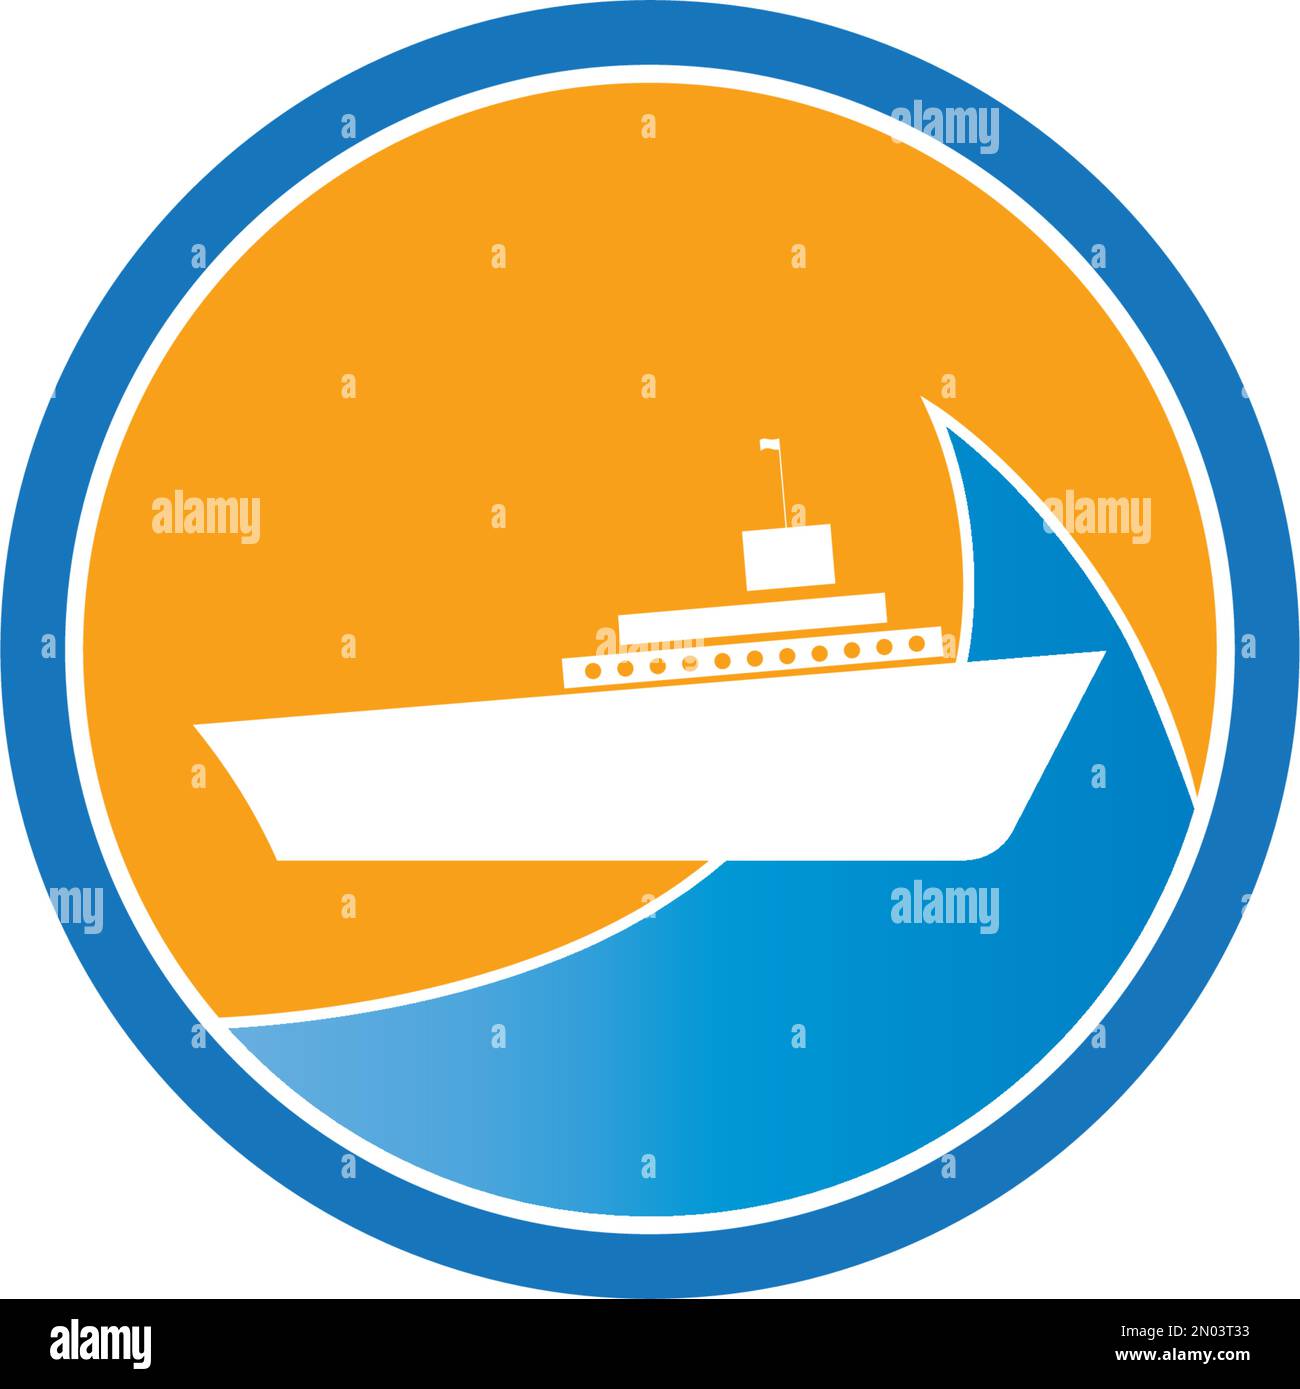 Design-Vorlage für Vektordarstellung von Kreuzfahrtschiffen Stock Vektor